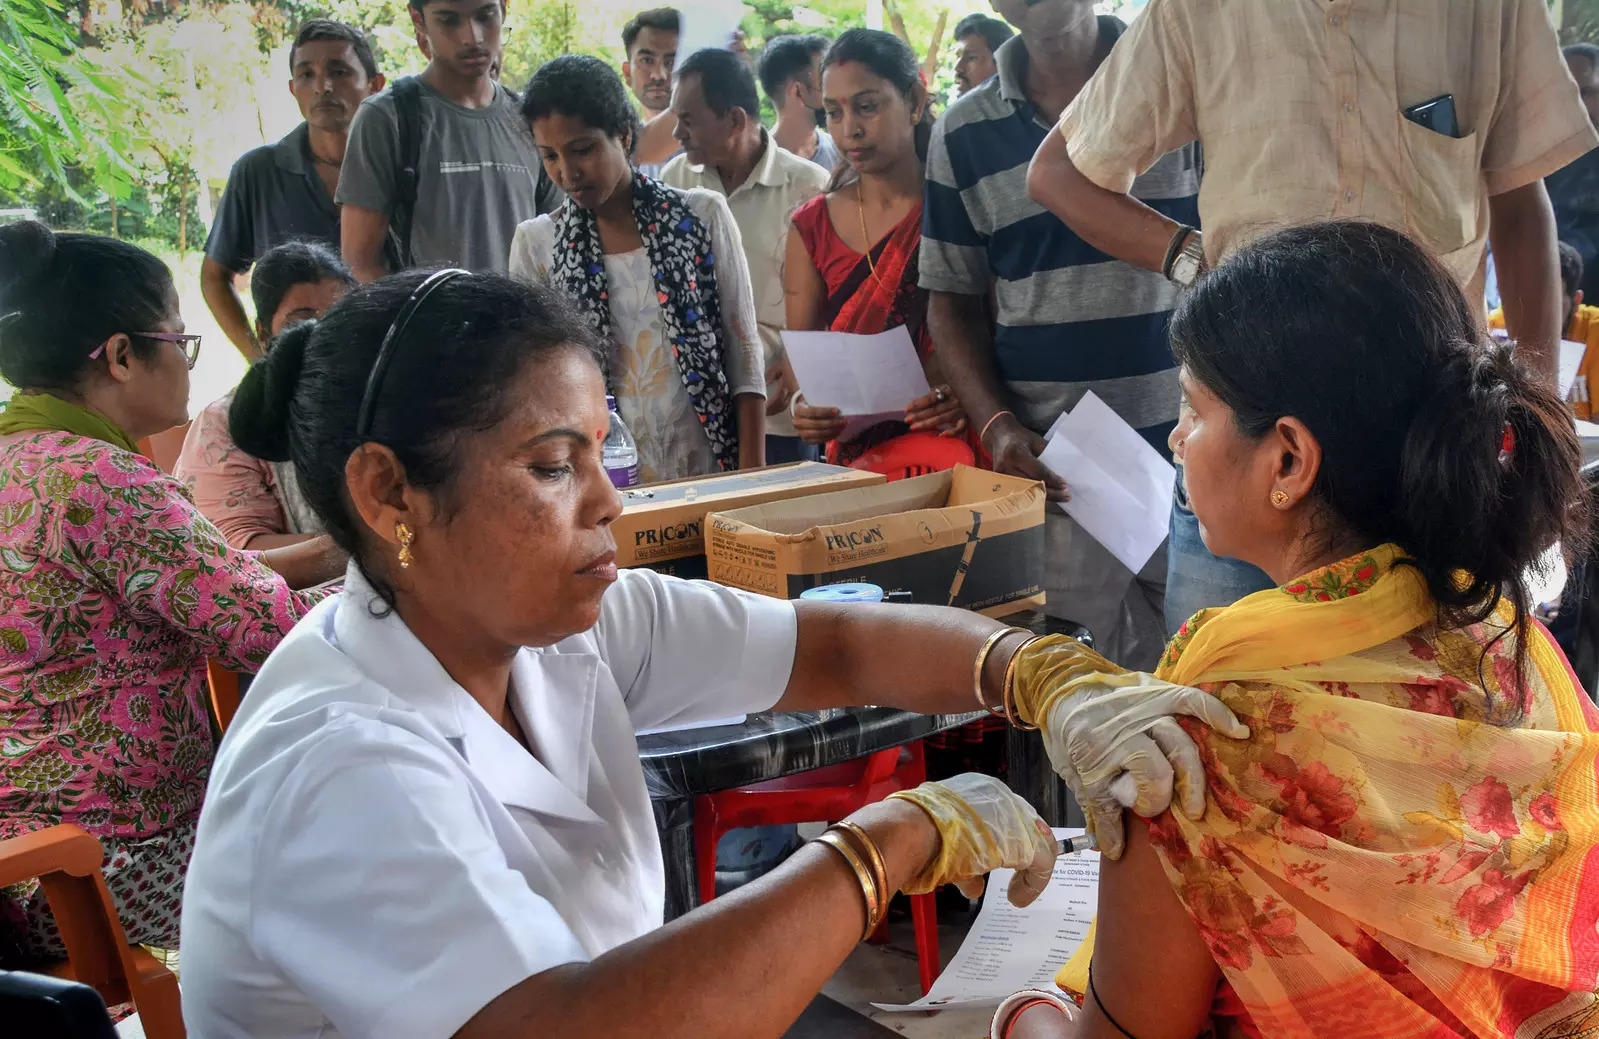 تعداد تجمعی دوزهای واکسن کووید-19 تجویز شده در هند از 203.17 کرور مارک: دولت: